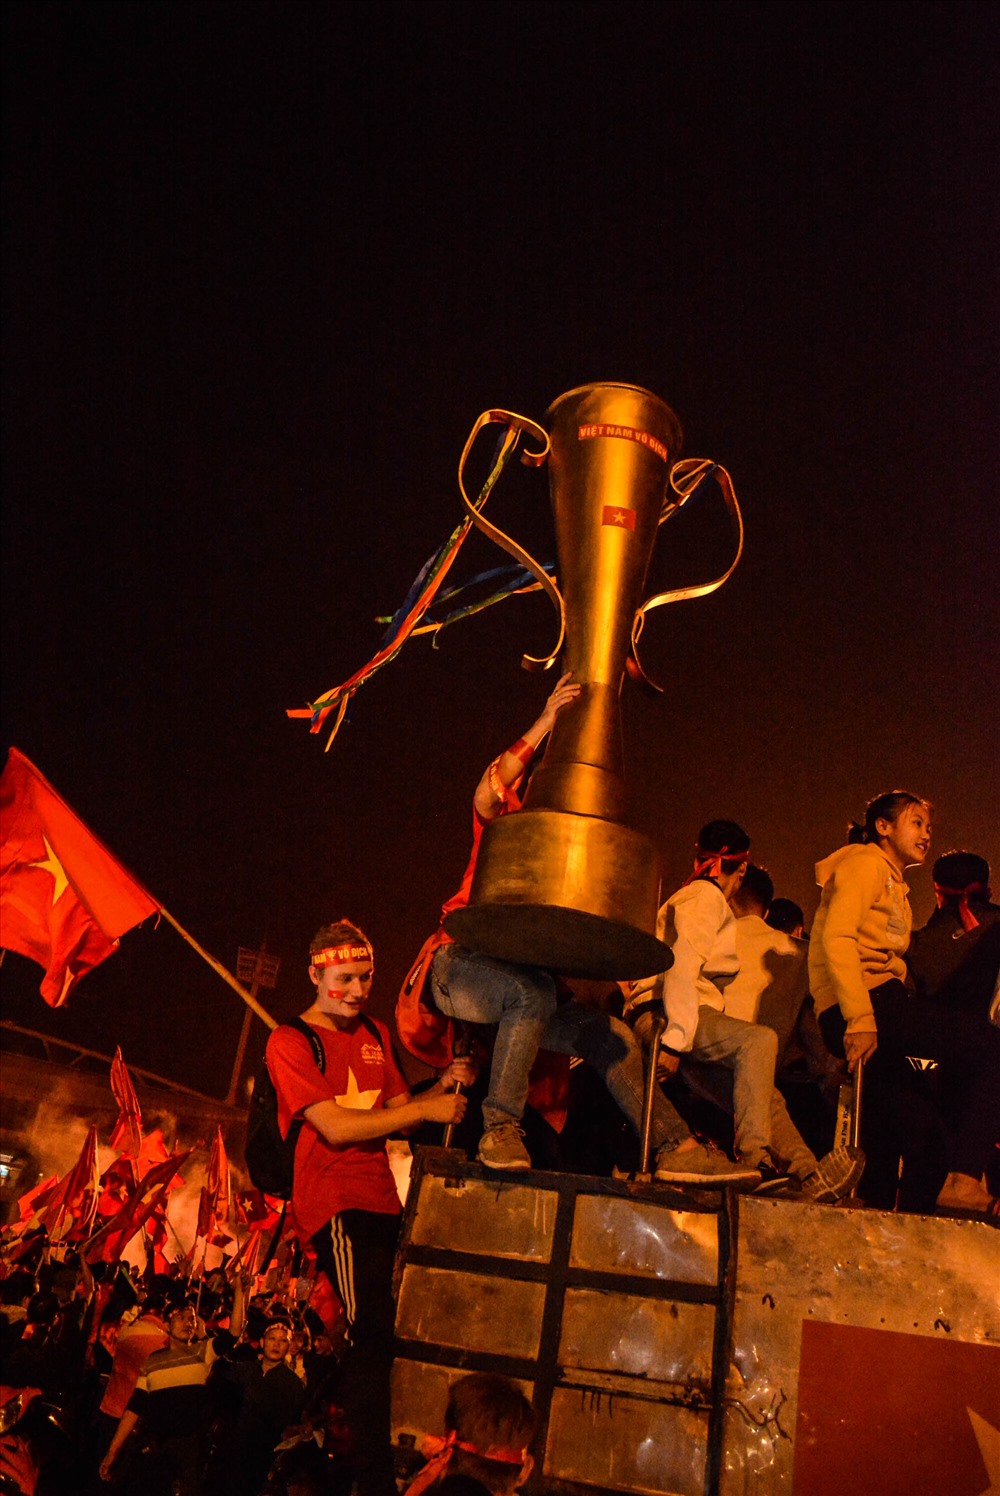 Chiếc Cup tự chế được mang đi diễu hành trong tiếng hò reo.